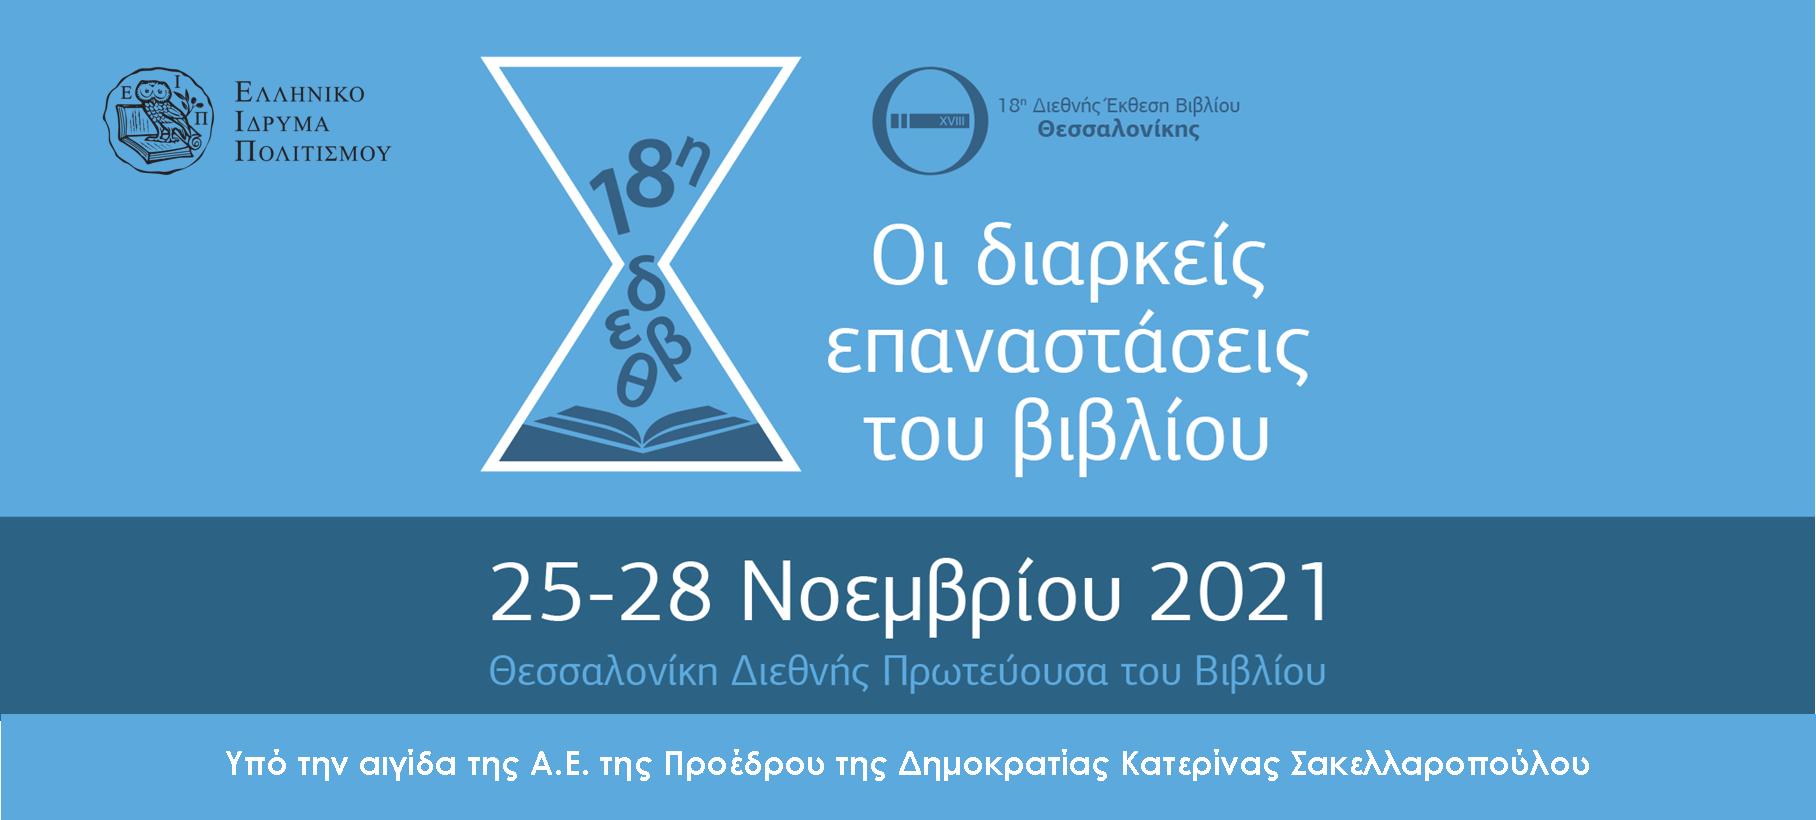 18η Διεθνής Έκθεση Βιβλίου Θεσσαλονίκης στις 25-28 Νοεμβρίου 2021 - ertnews.gr